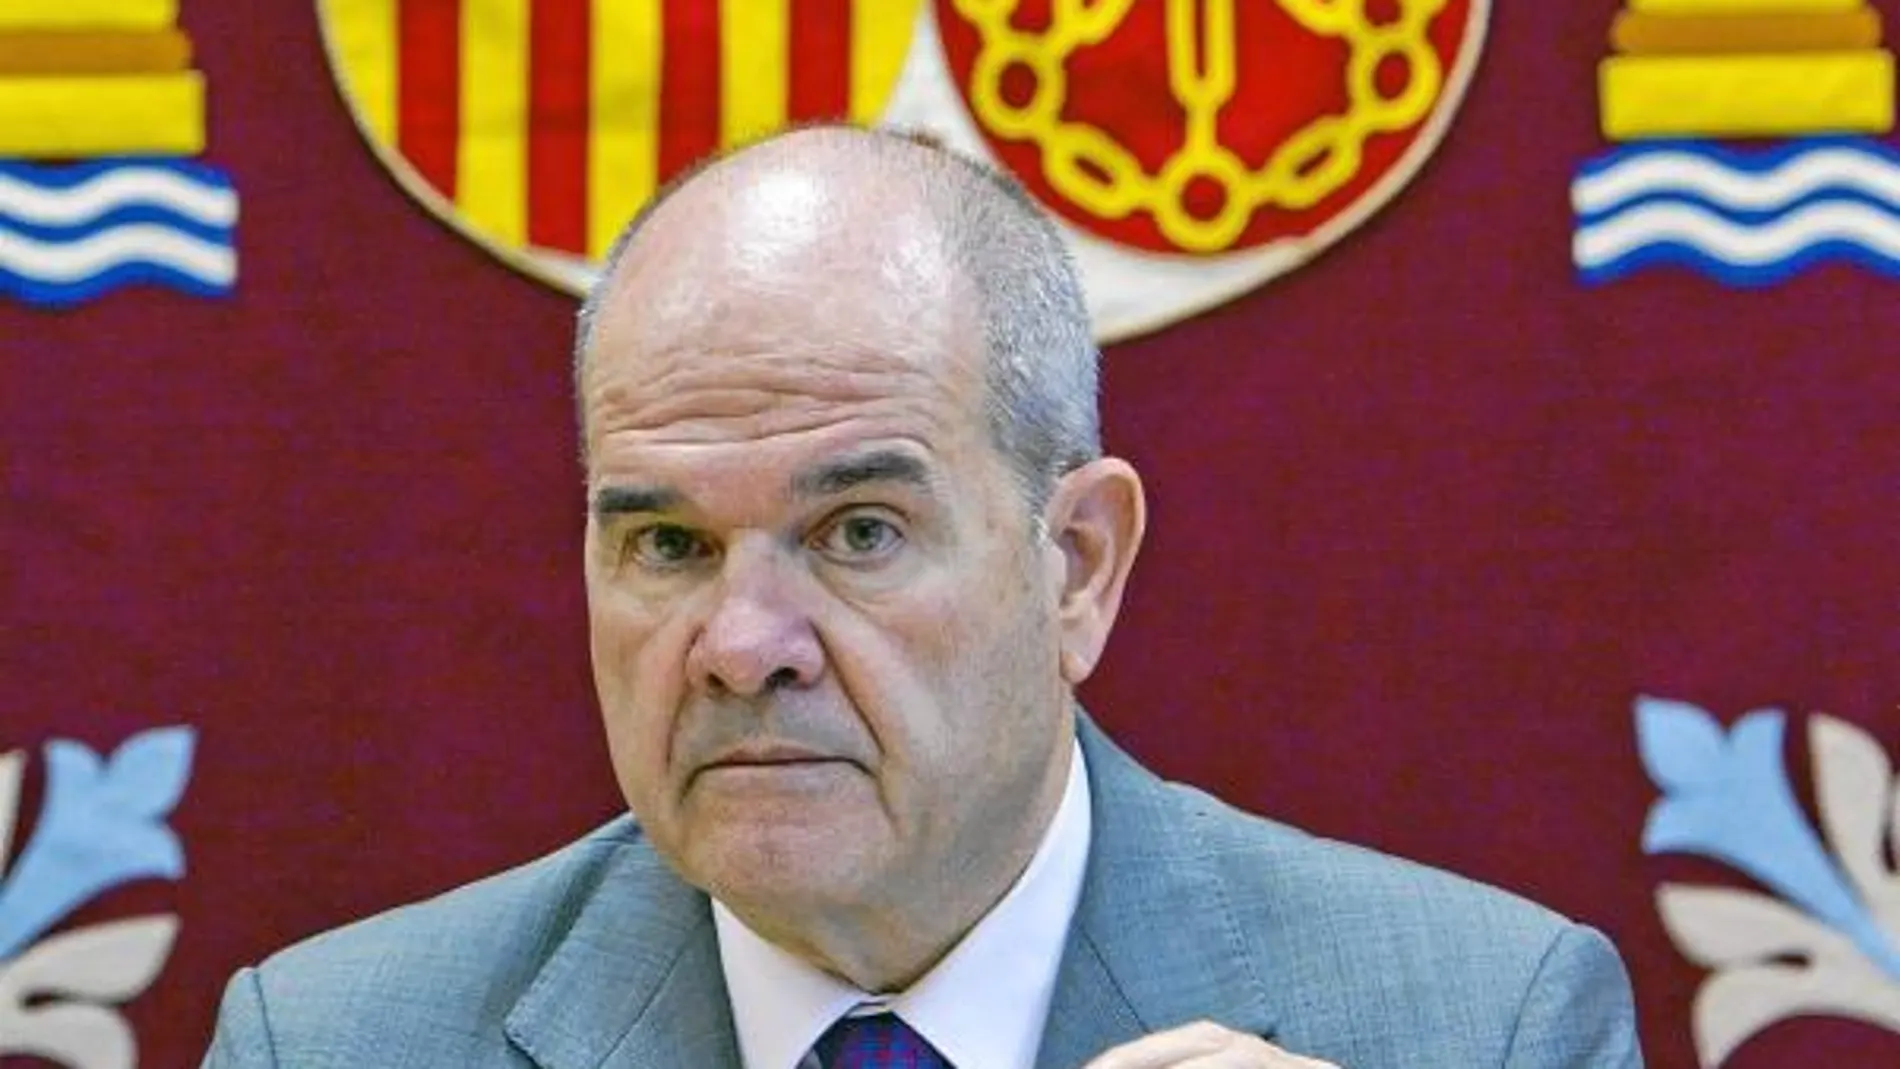 El vicepresidente del Gobierno central y ministro de Política Territorial, Manuel Chaves